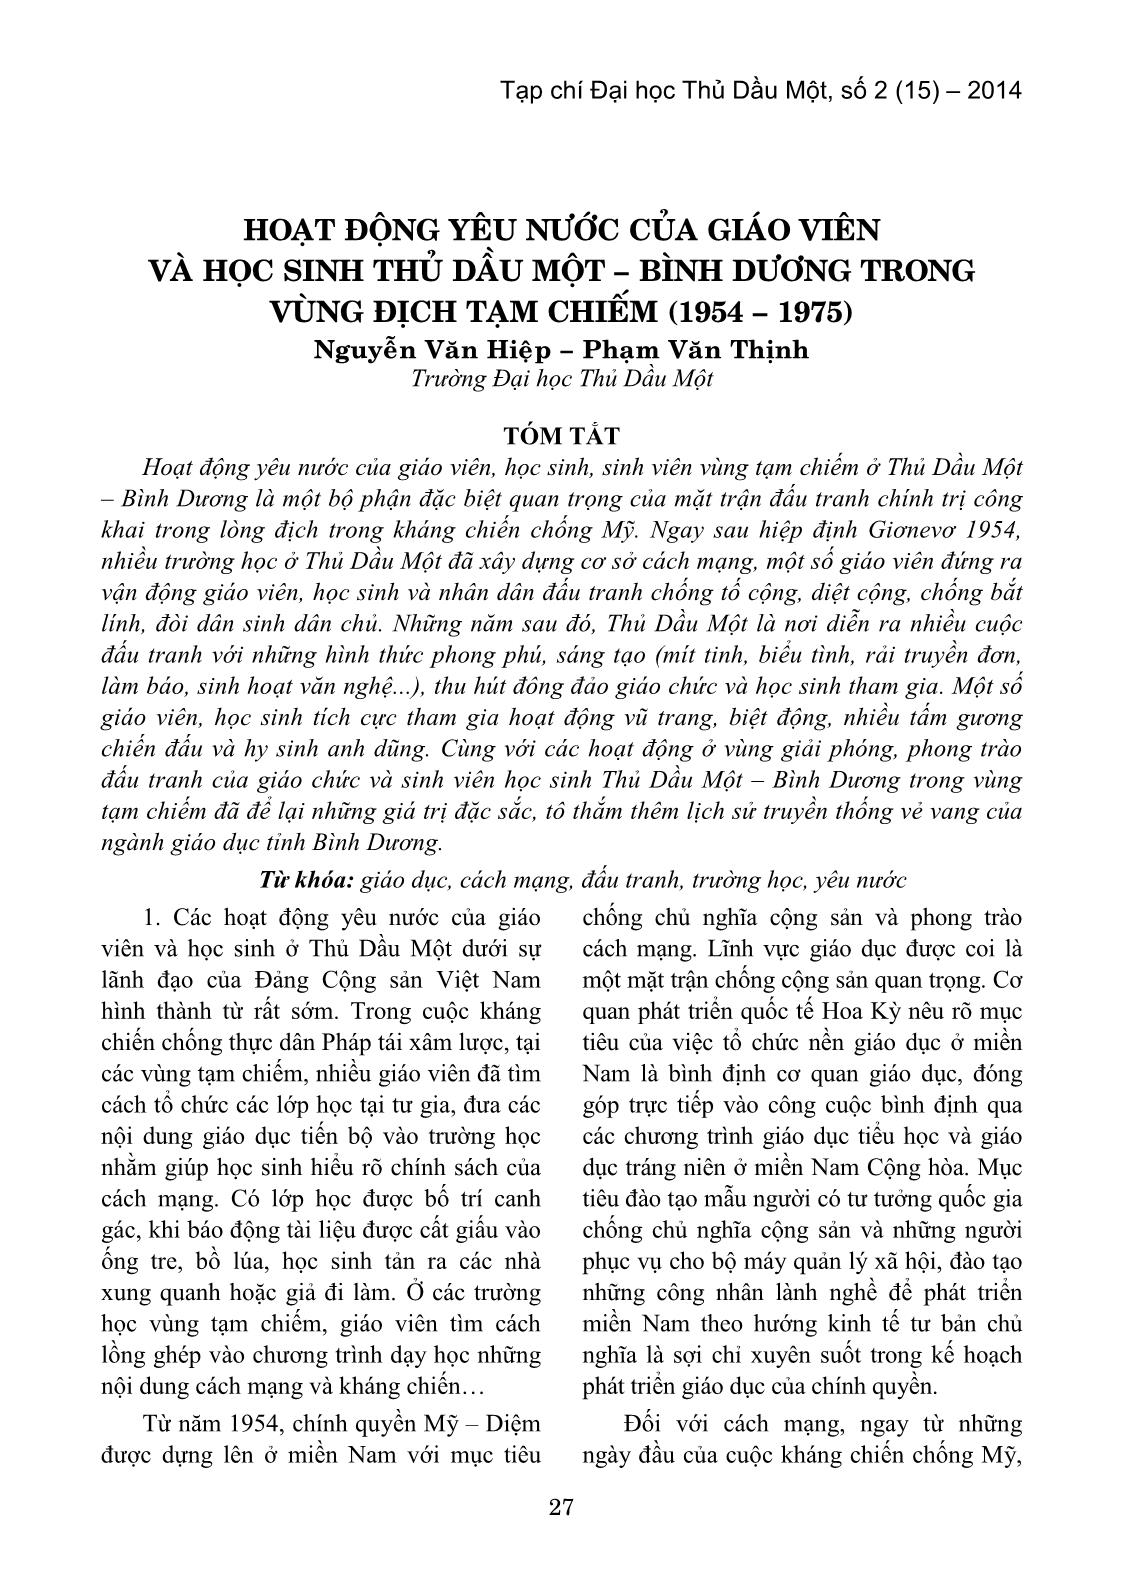 Hoạt động yêu nước của giáo viên và học sinh Thủ Dầu Một – Bình Dương trong vùng địch tạm chiếm (1954 – 1975) trang 1